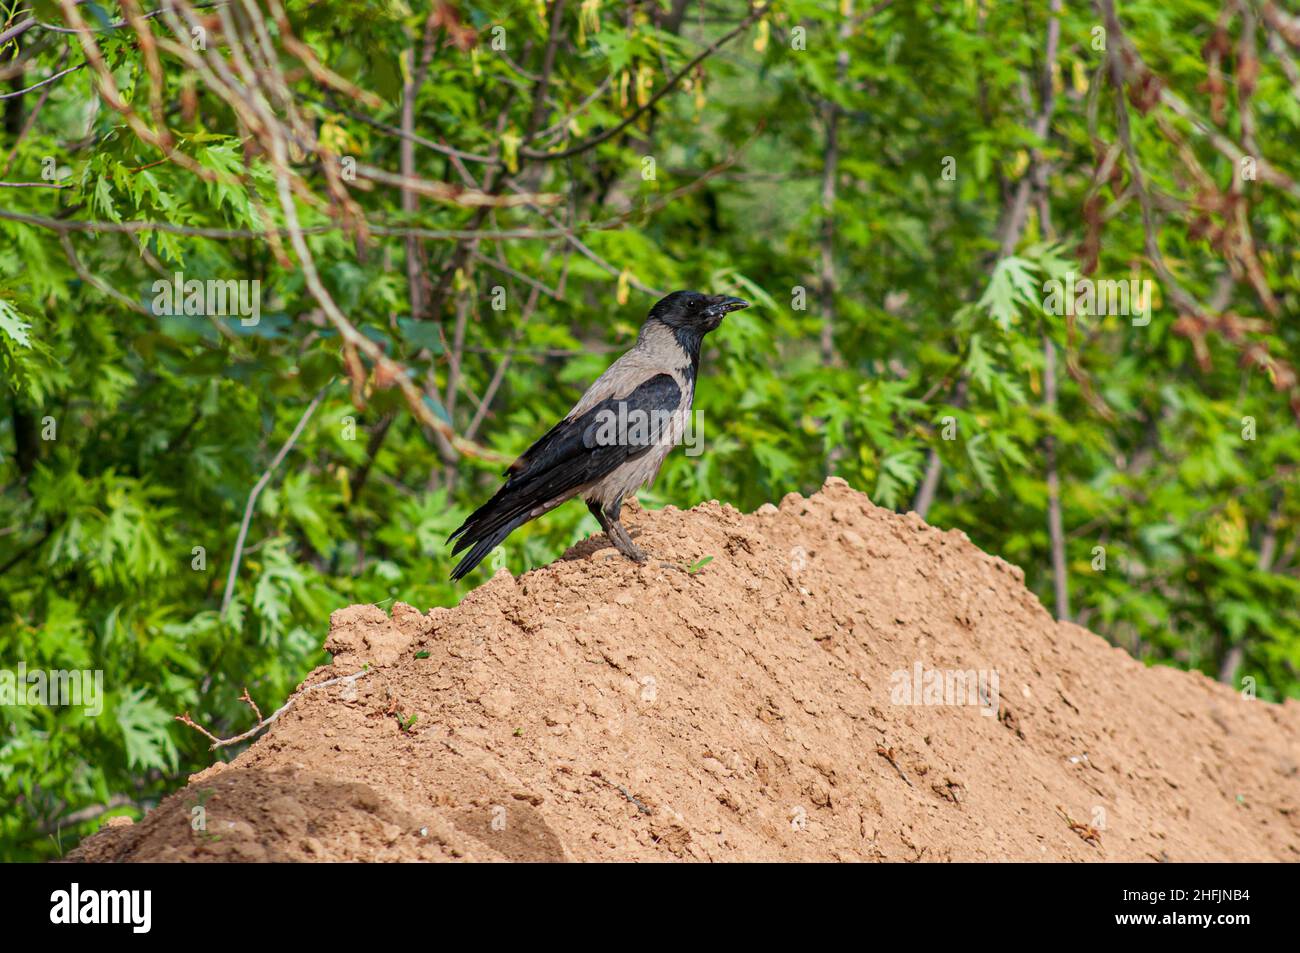 Eine Erwachsene Kapuzenkrähe, die auf einem Sandhaufen im Profil reitet. Grüner vegetativer Hintergrund, selektiver Fokus. Ein allesfressender Greifvogel auf der Erde. Stockfoto